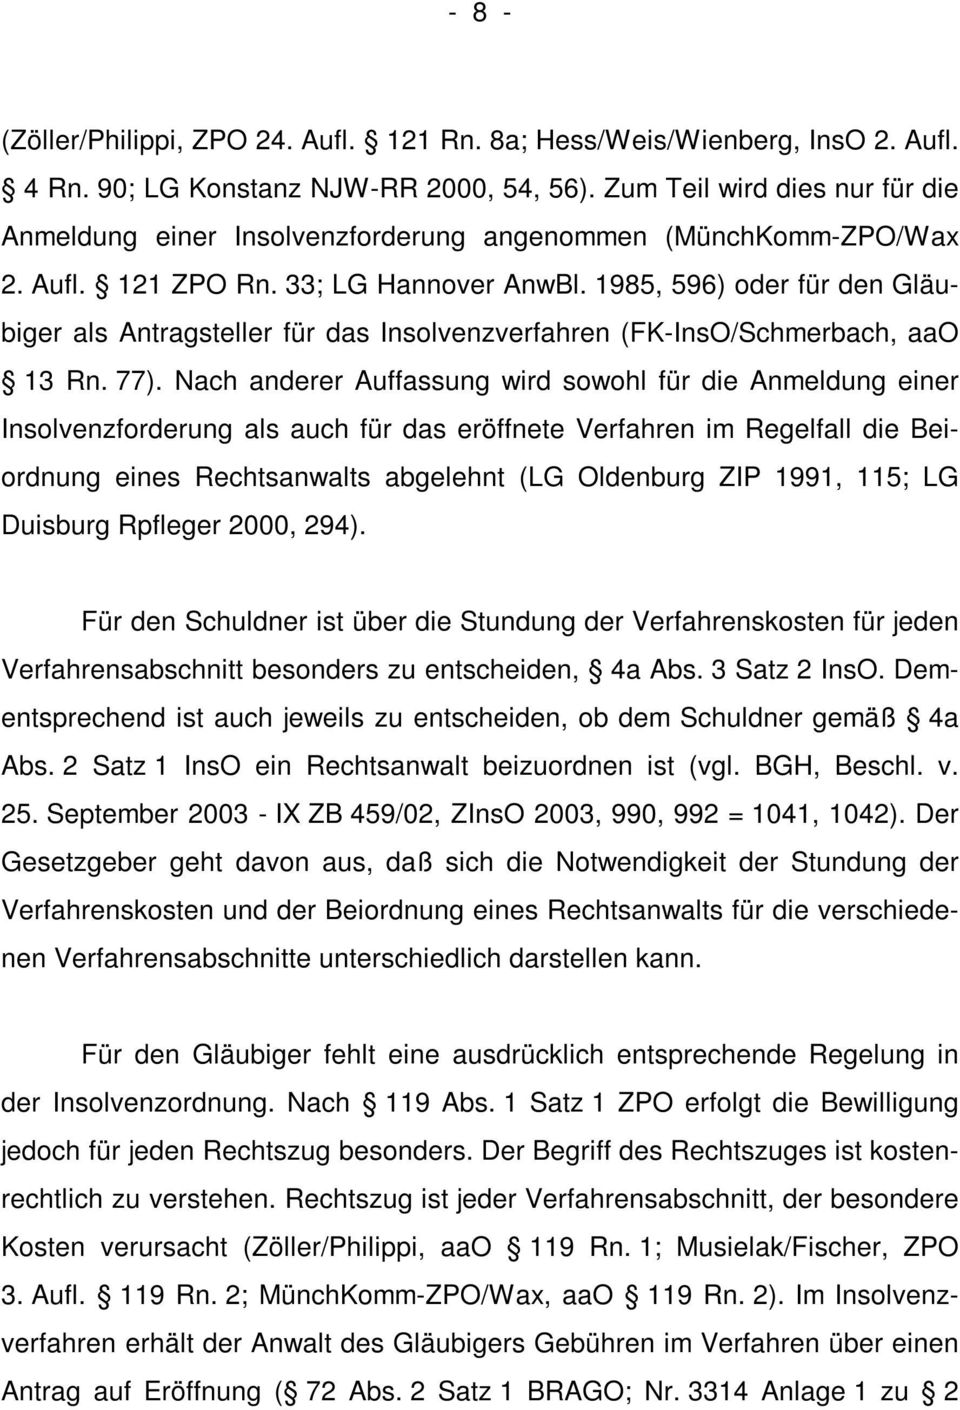 1985, 596) oder für den Gläubiger als Antragsteller für das Insolvenzverfahren (FK-InsO/Schmerbach, aao 13 Rn. 77).